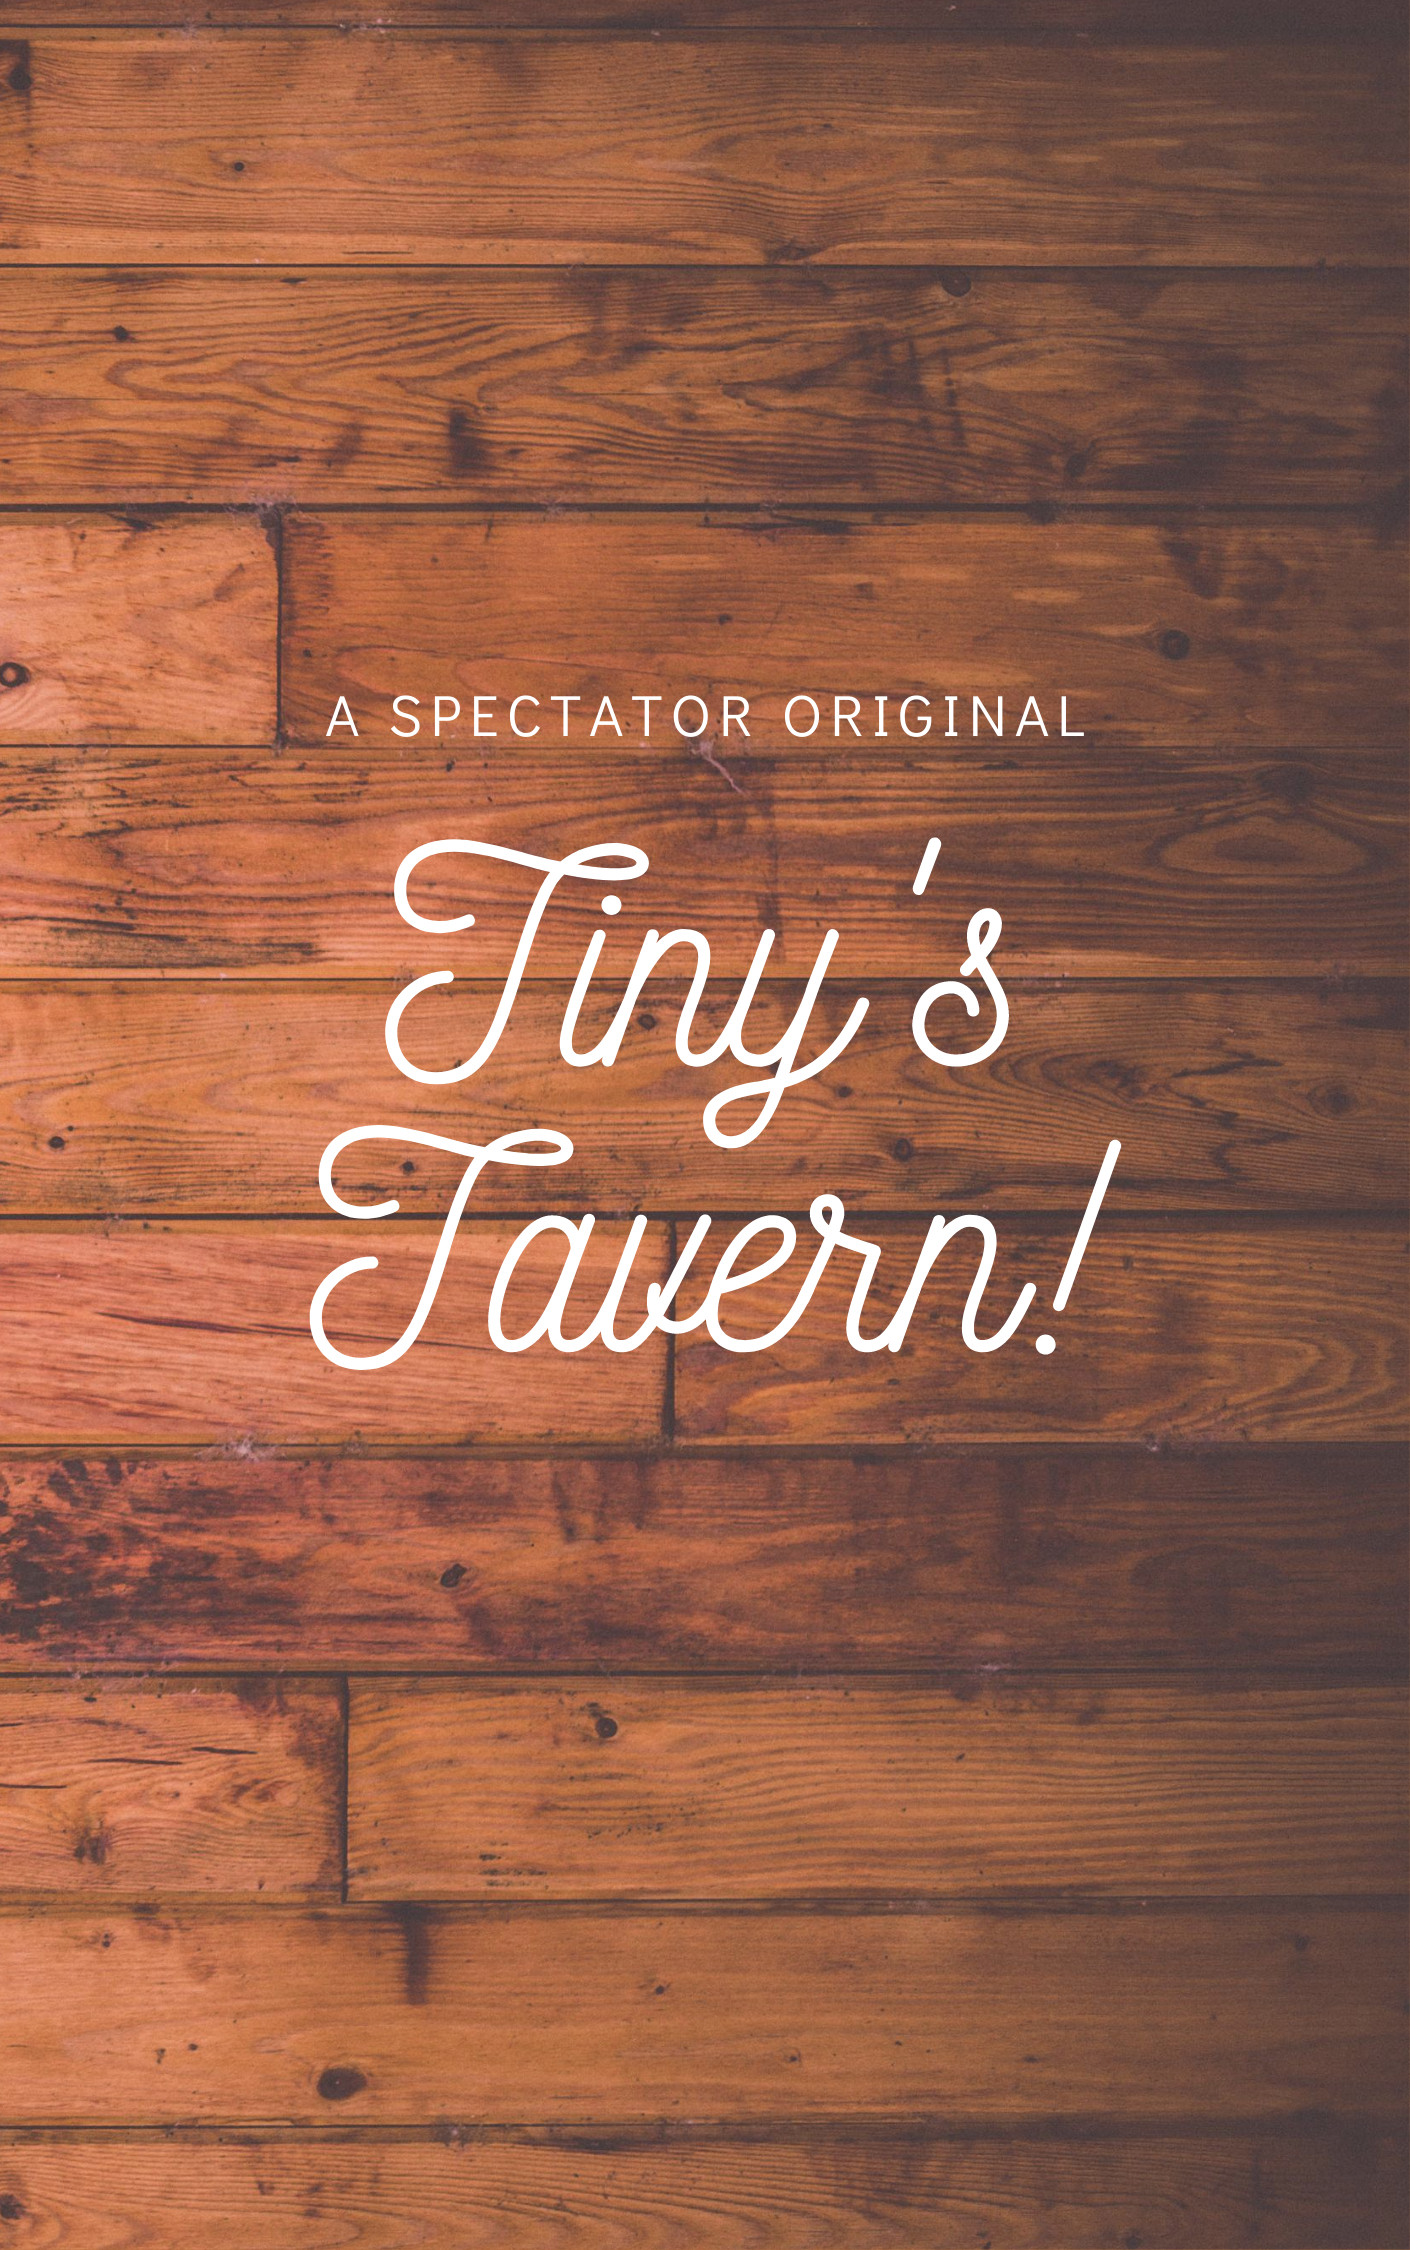 Tiny's Tavern